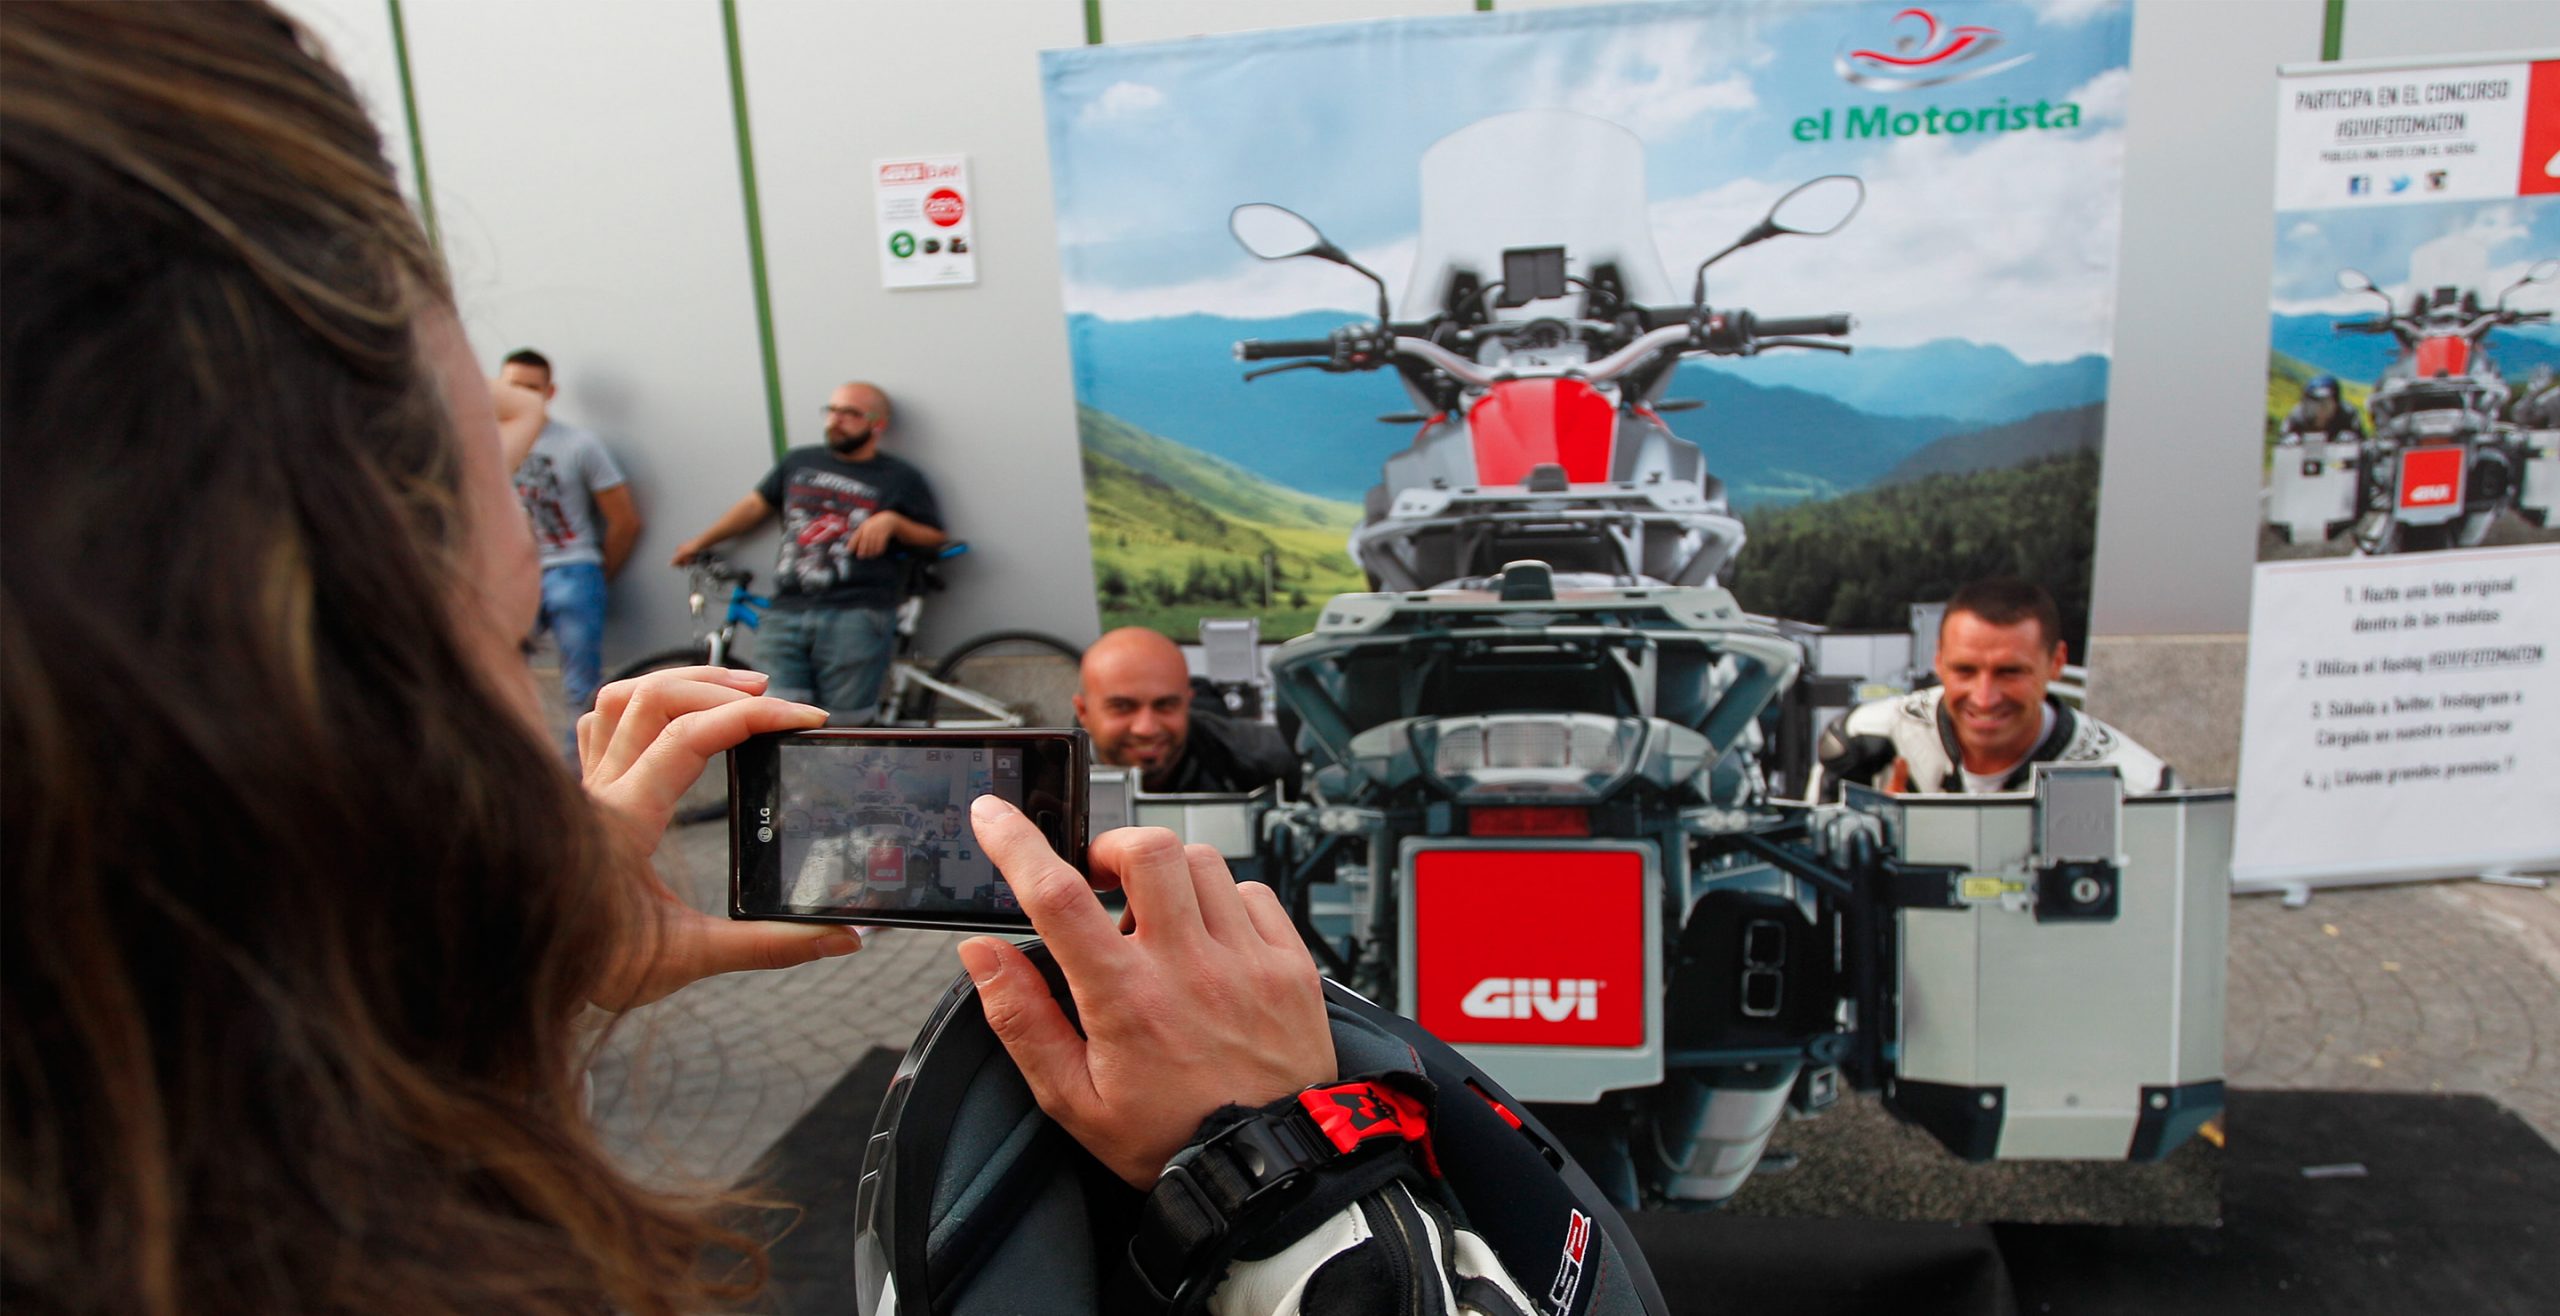 Corpóreo maletas GIVI para accón de marketing de guerrilla durante la celebración del Gran Premio de Motociclismo de Jerez 2014